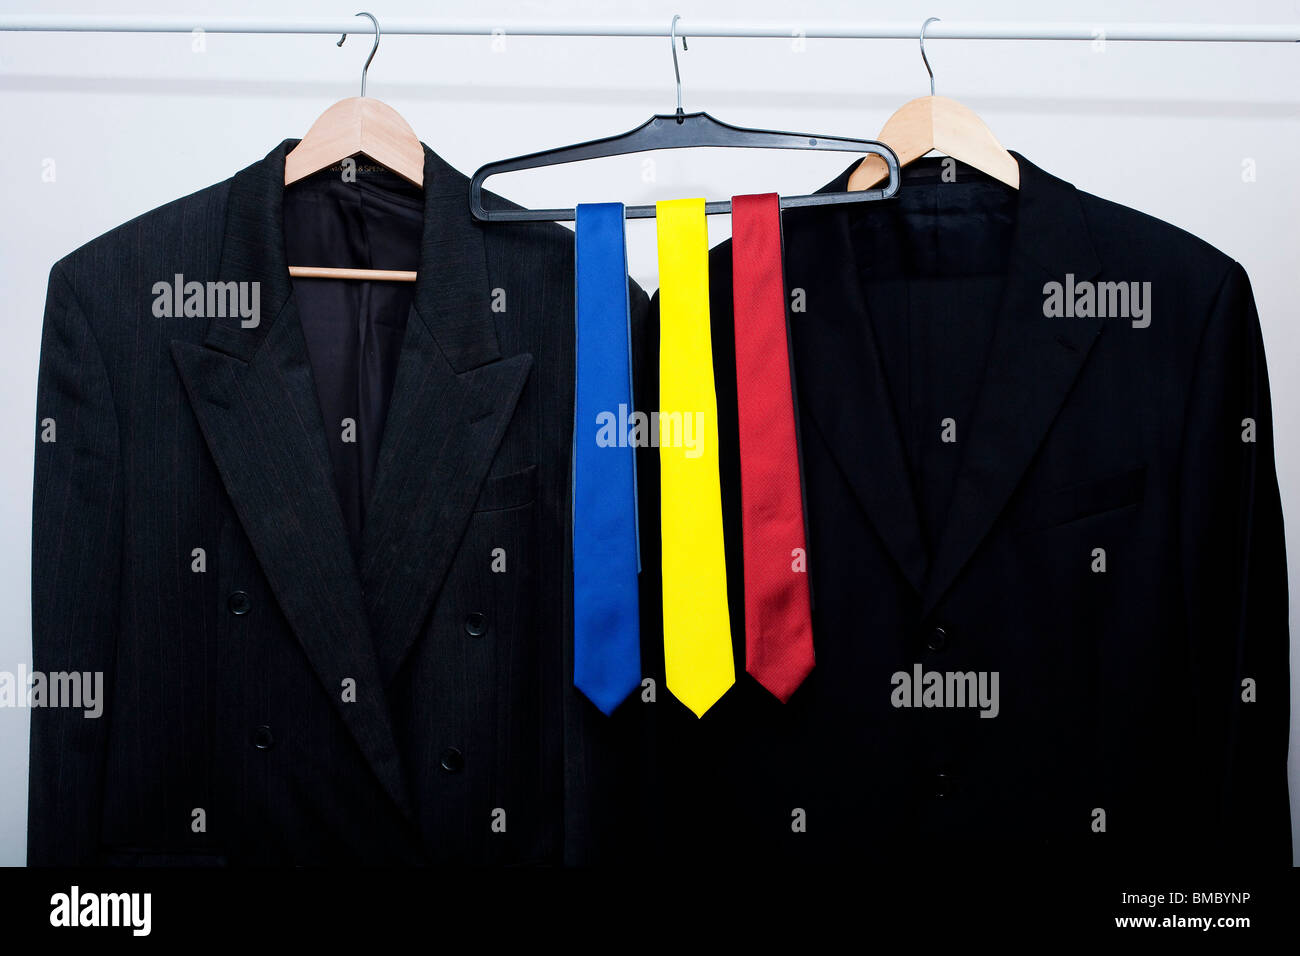 rote, blaue und gelbe Krawatten auf einer Schiene in einem Geschäft. als nächstes passen Sie Jacken. Metapher für die britische allgemeine Wahl 2010 Stockfoto